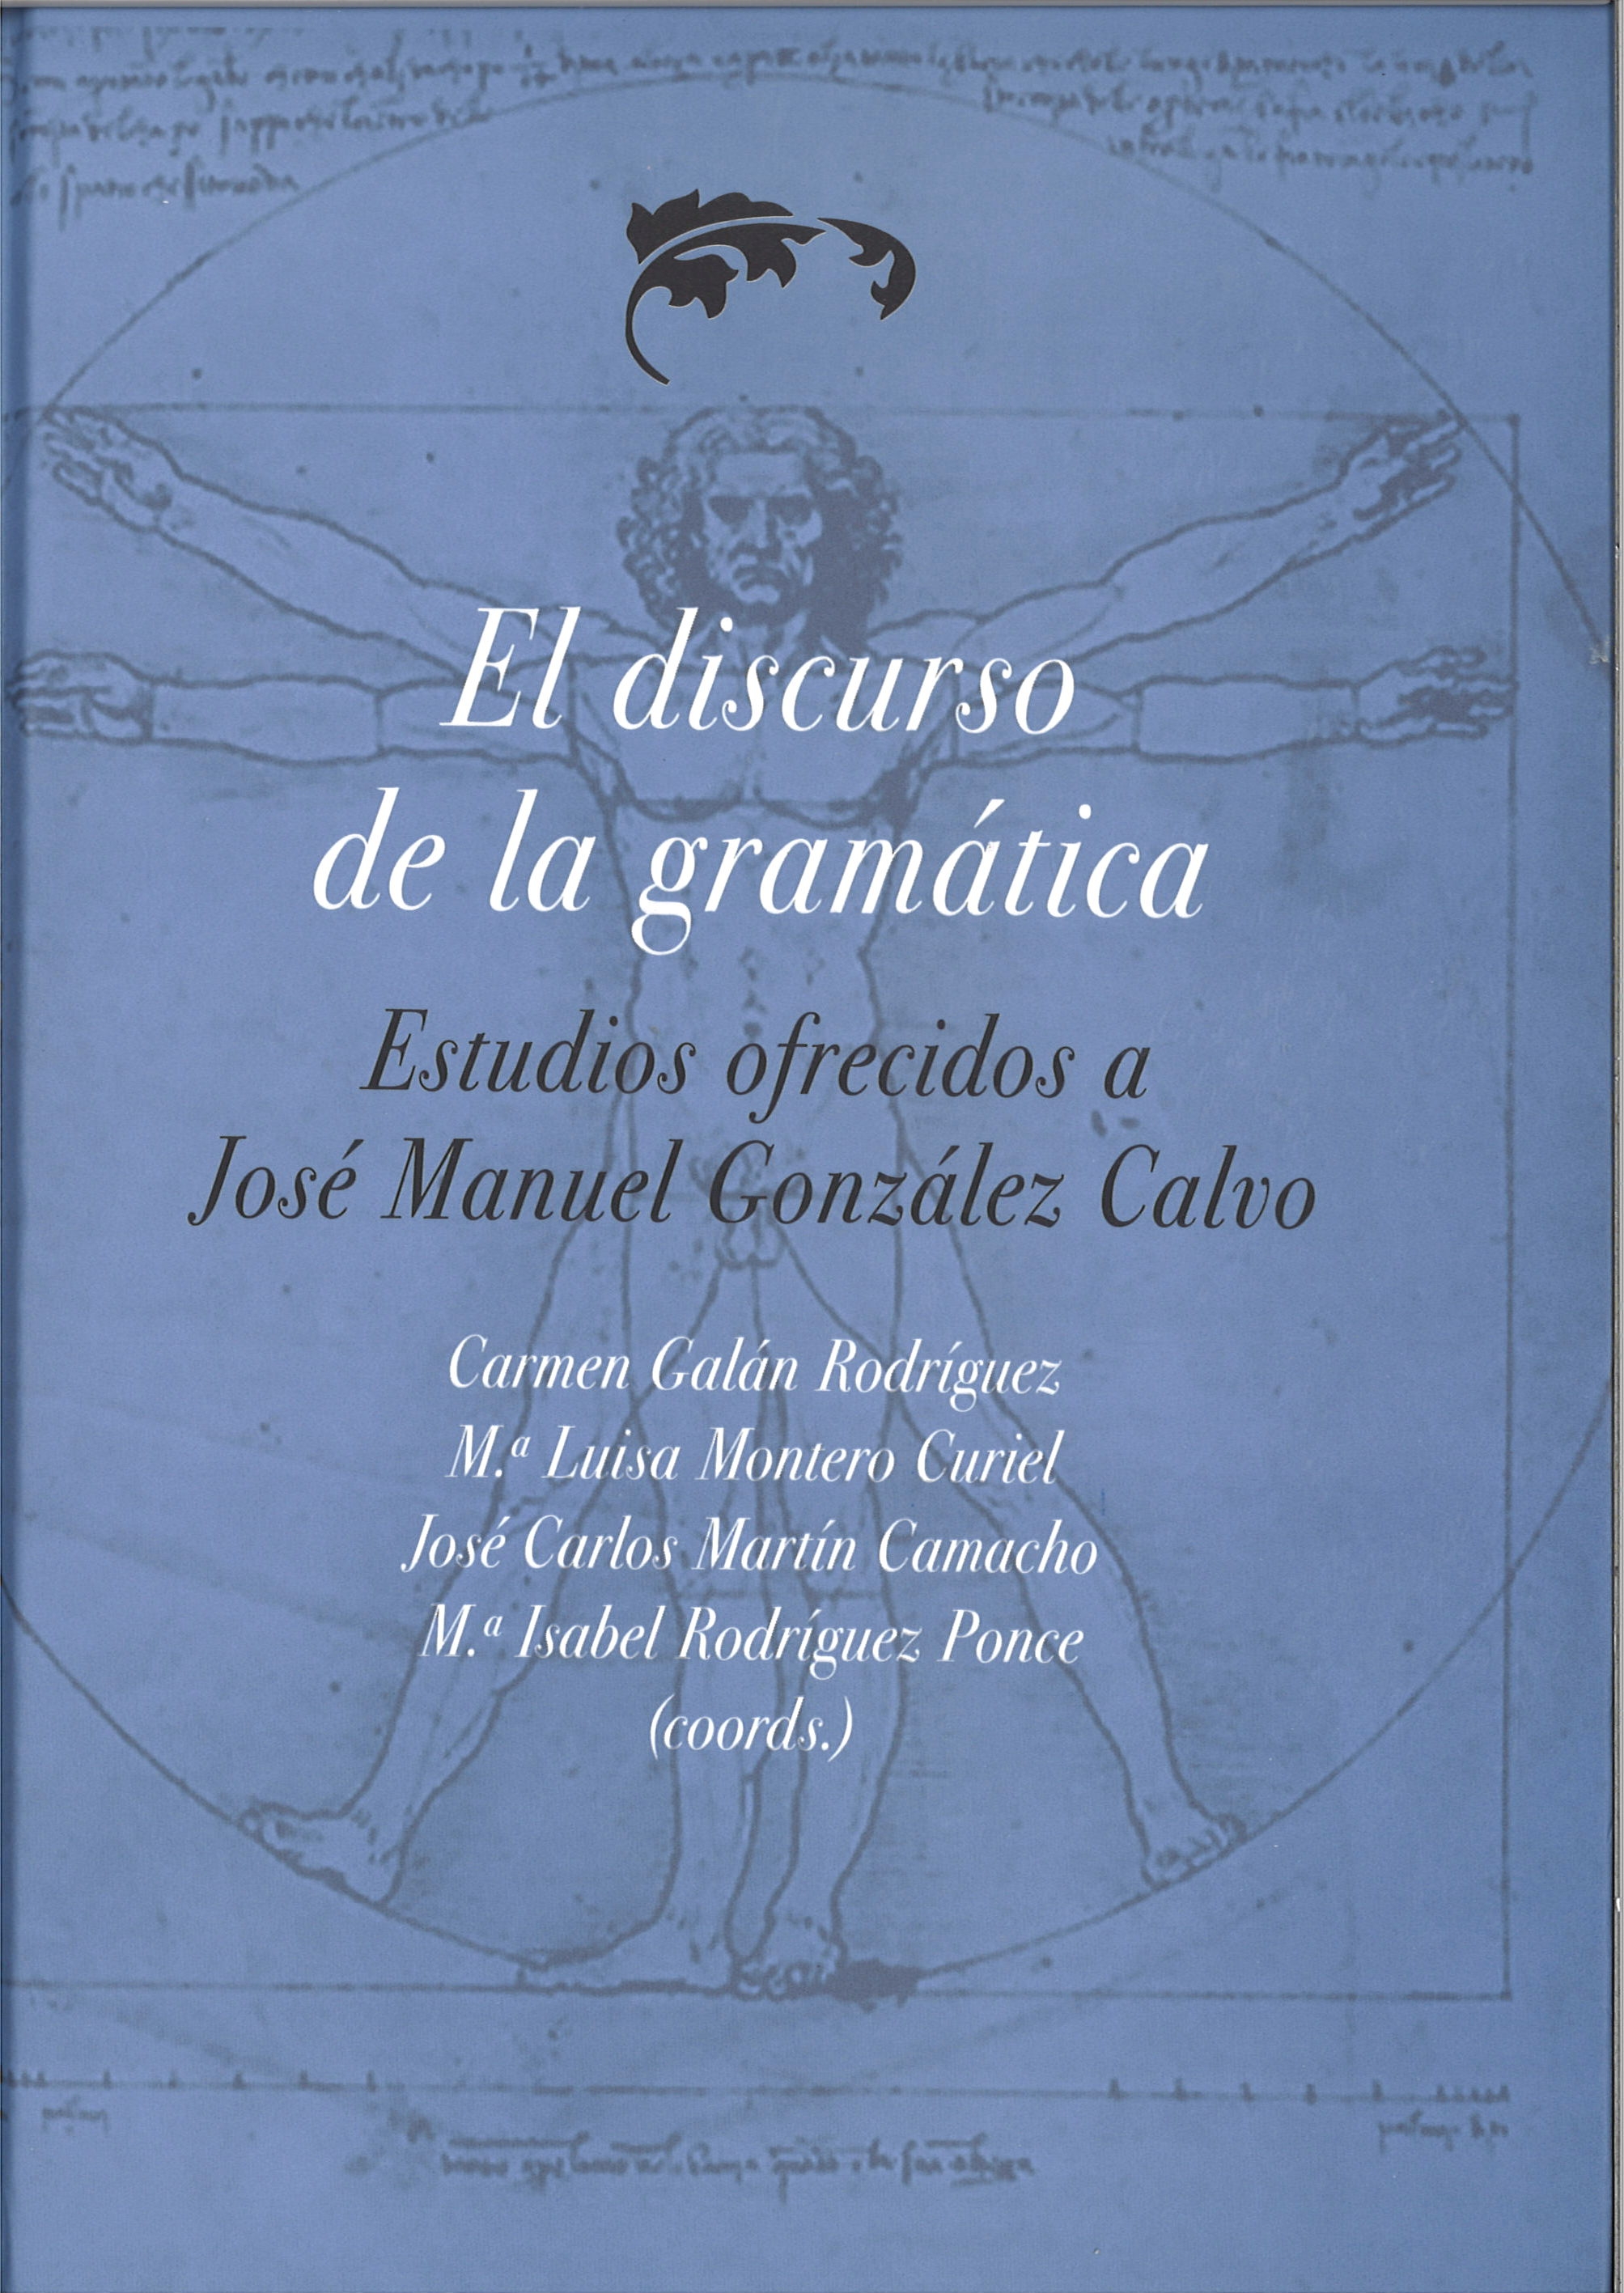 Imagen de portada del libro El discurso de la gramática